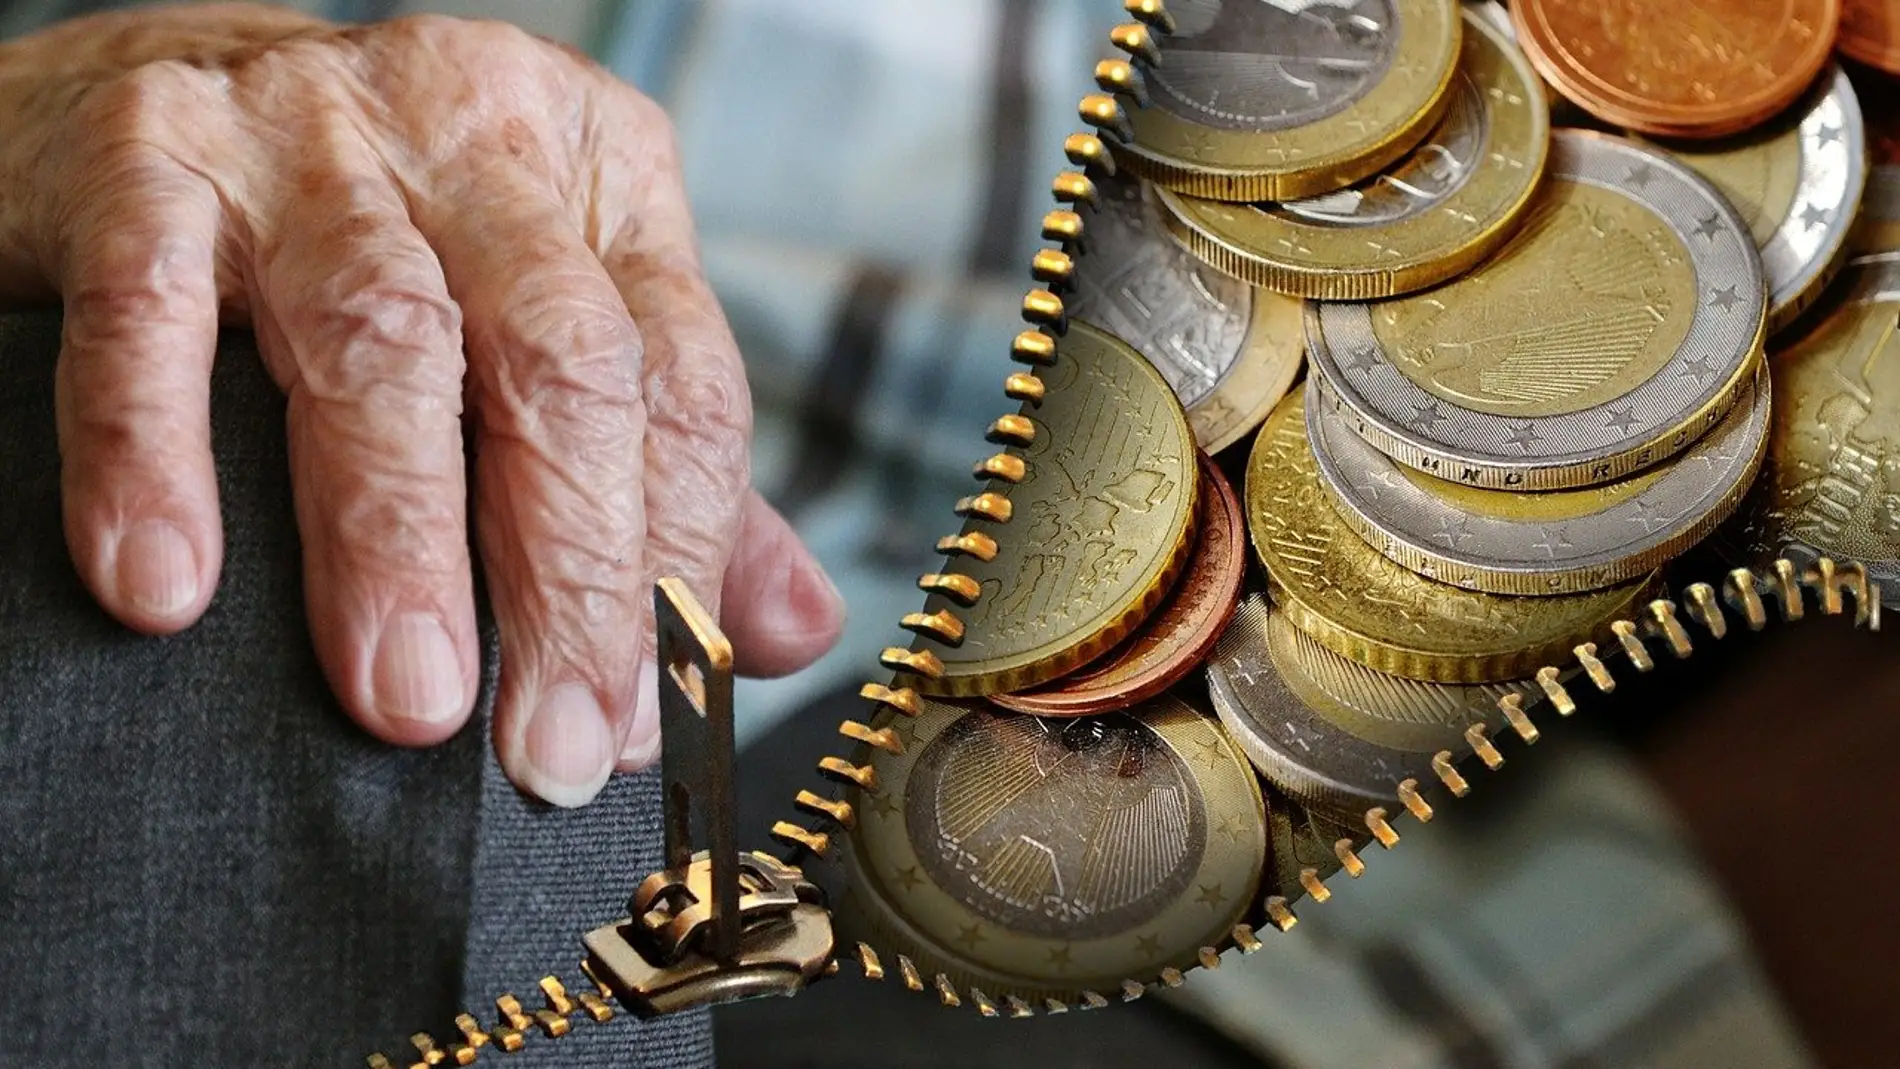 Fedea advierte que el gasto en pensiones "se va a comer todo lo demás" y apuesta por un recargo en el IRPF